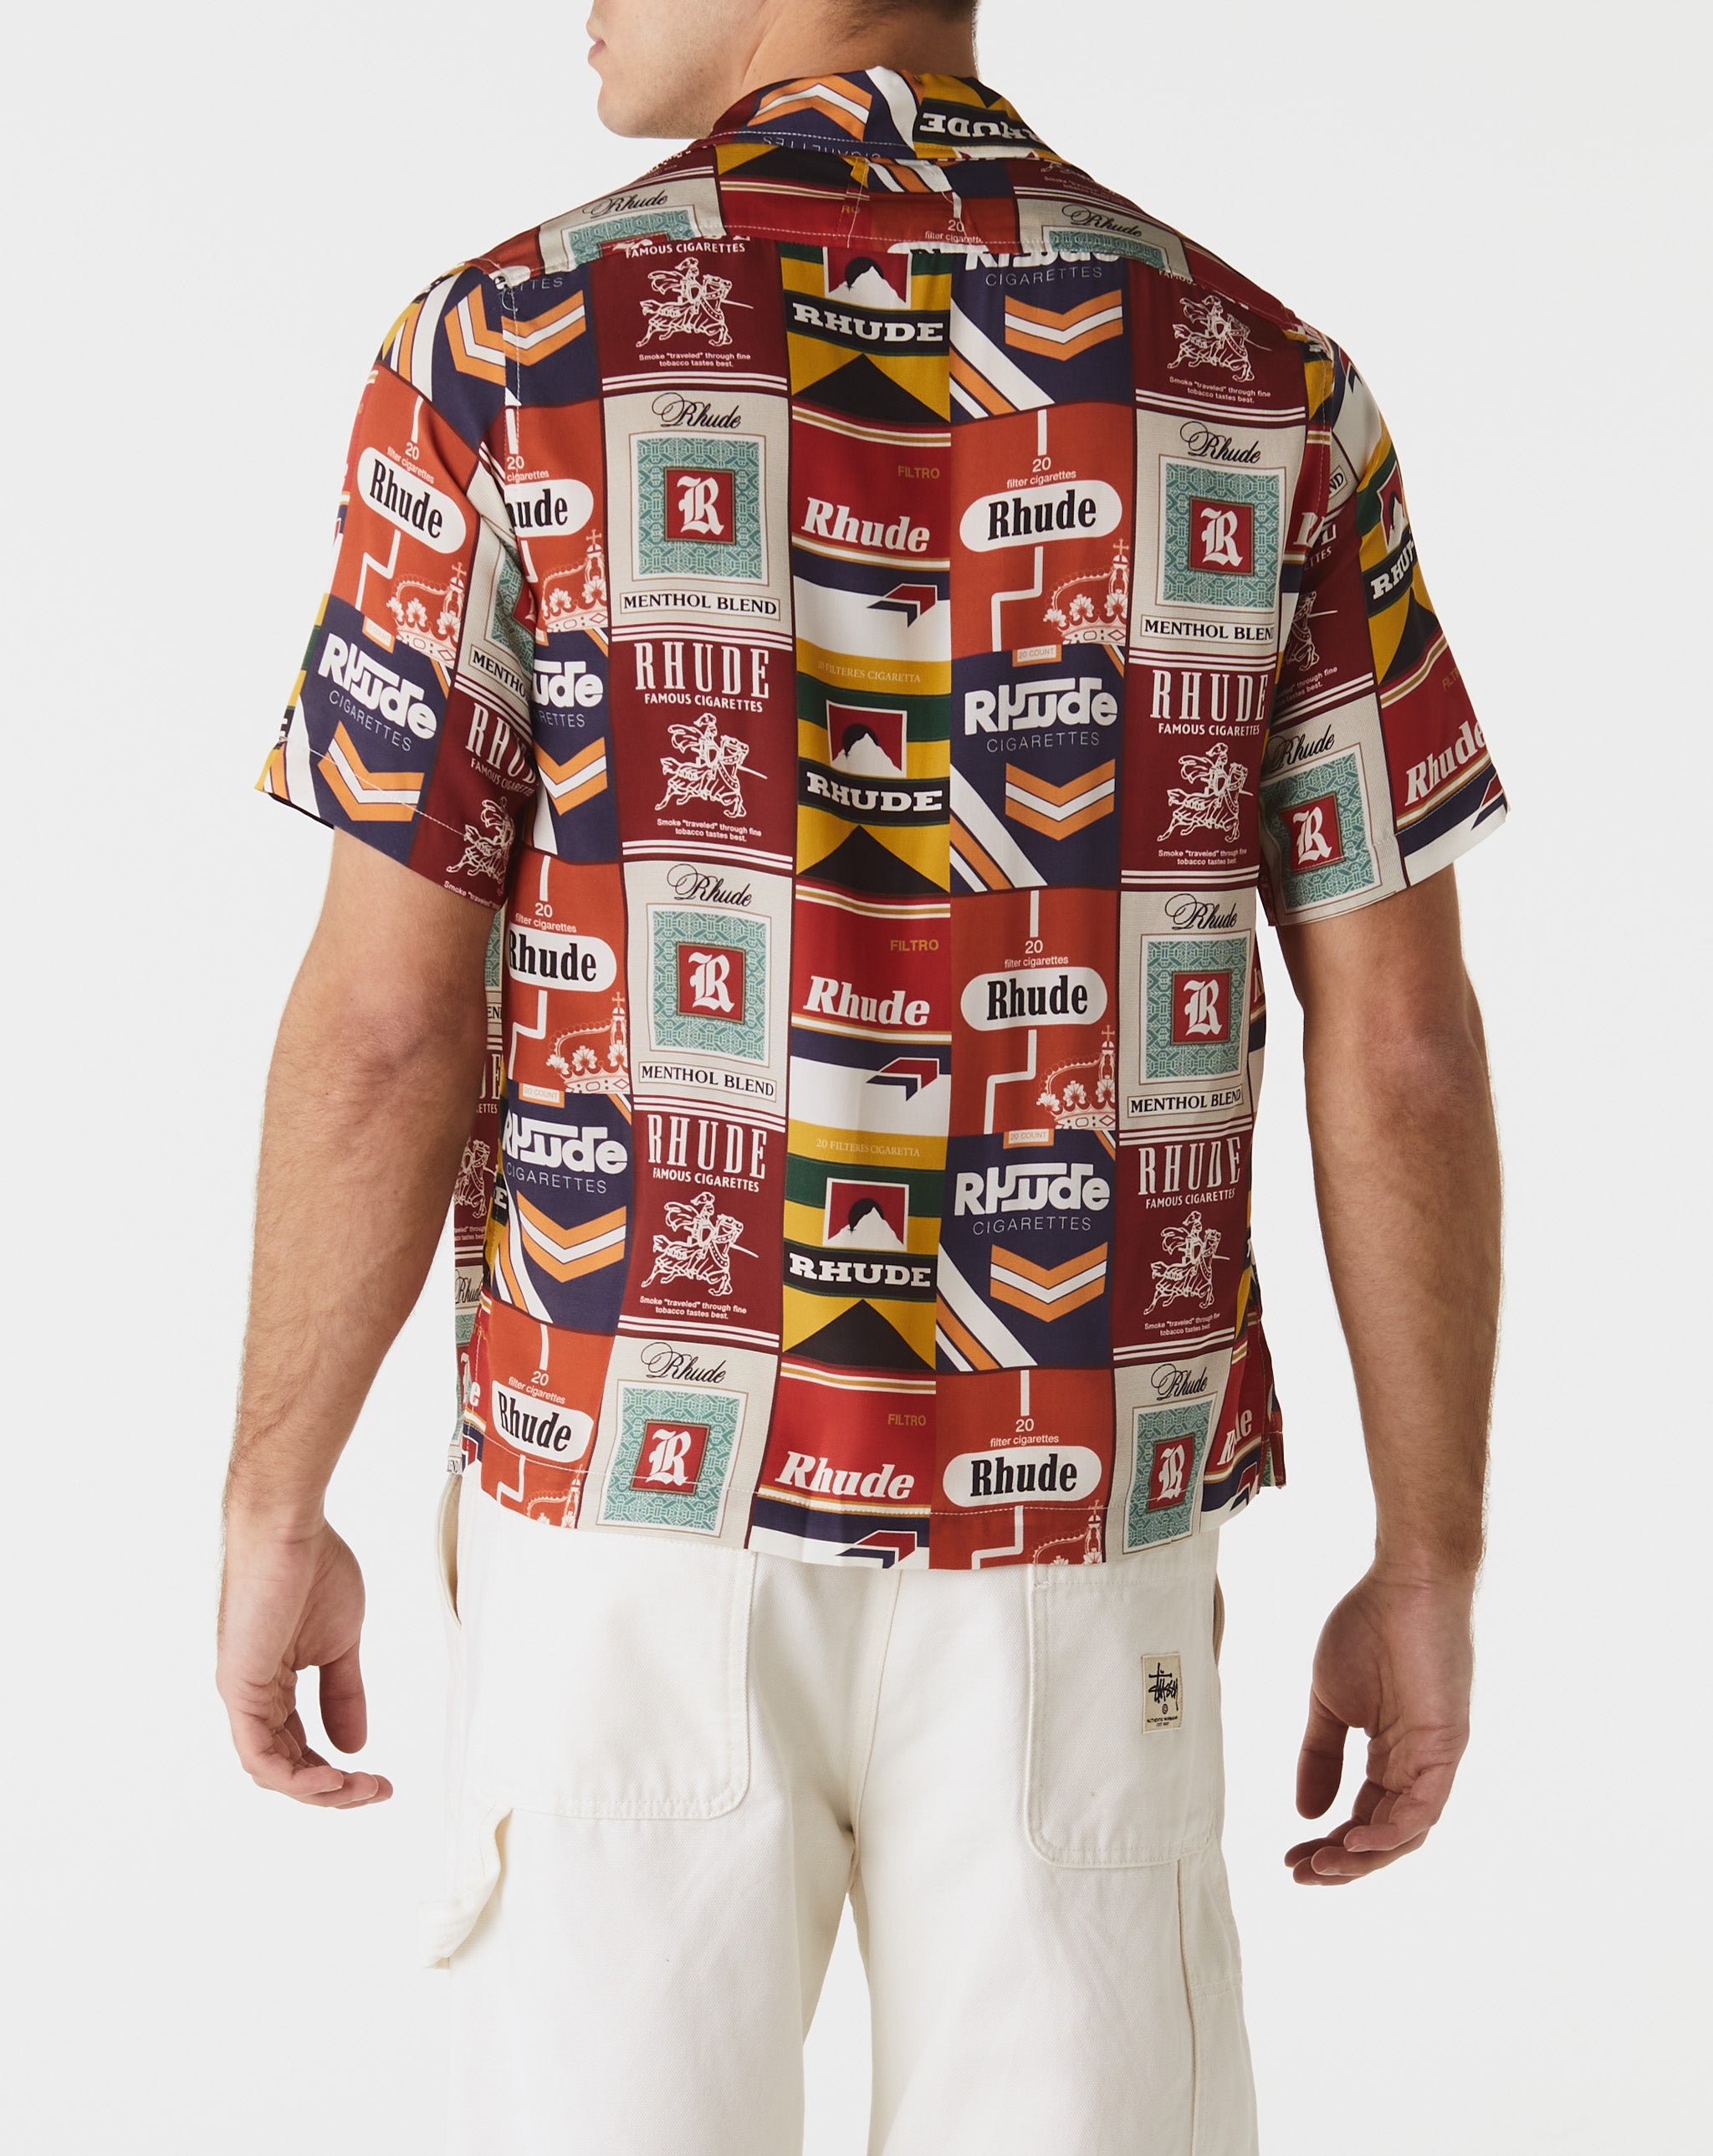 Rhude Levis Solid Crew Men's T-shirt 2-Pack  - Cheap Urlfreeze Jordan outlet